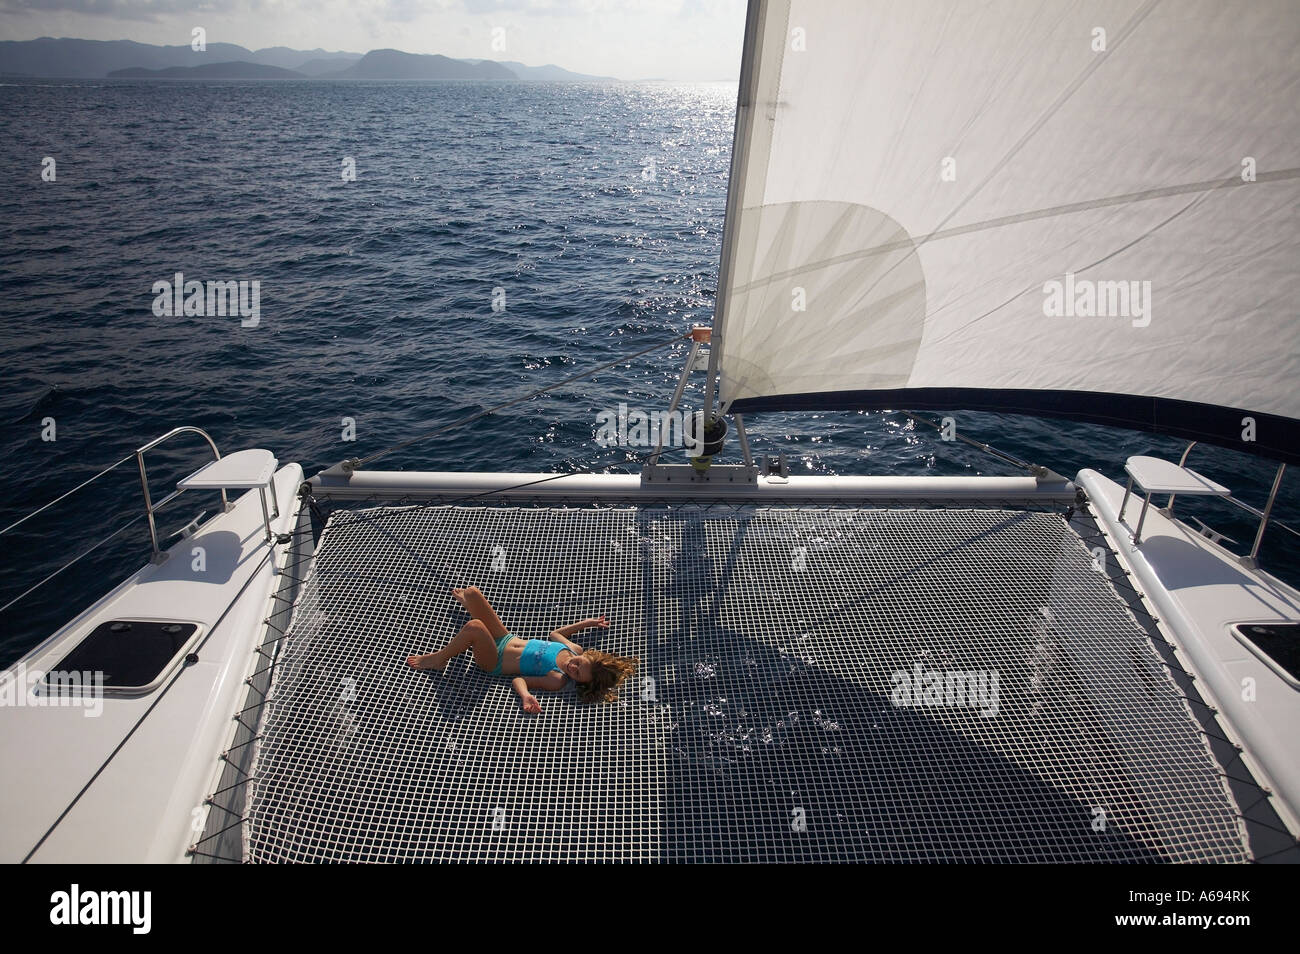 junges Mädchen auf dem Trampolin auf Katamaran, Segelboot in Britische  Jungferninseln Stockfotografie - Alamy